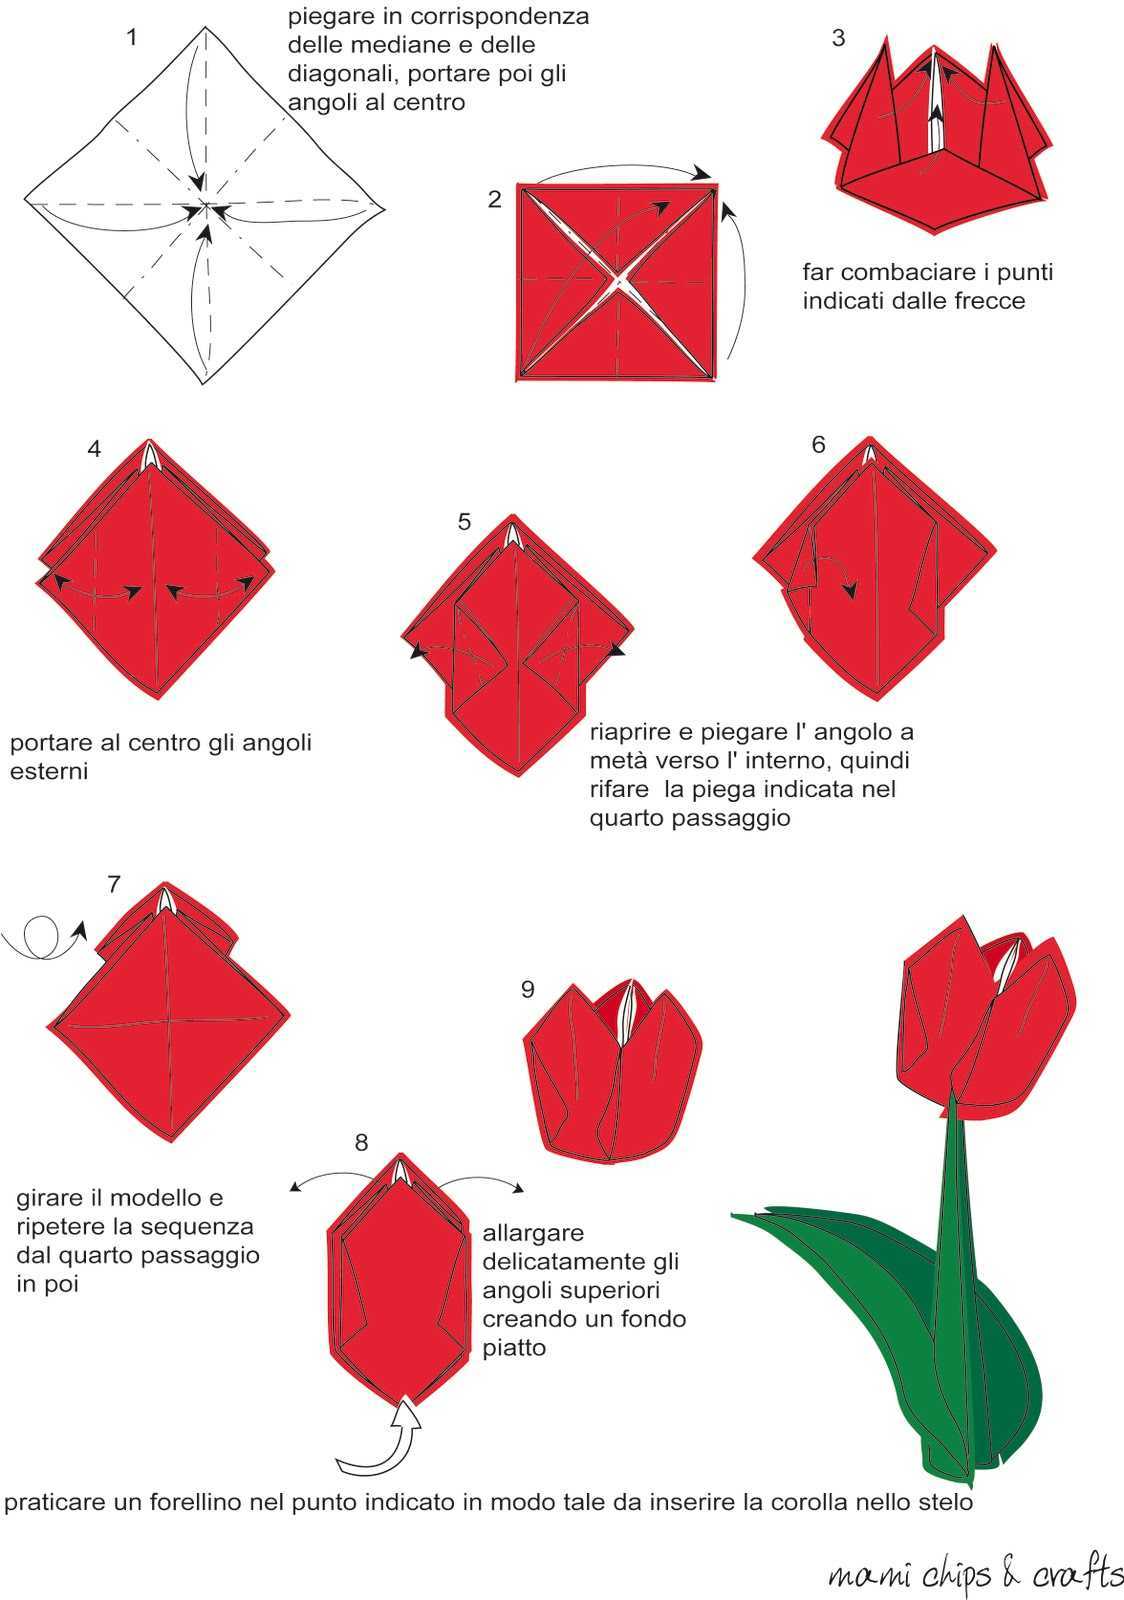 Пошаговое оригами цветка. Оригами тюльпан схема. Оригами тюльпан пошагово для начинающих. Схема оригами из бумаги тюльпан поэтапно для начинающих. Тюльпан из бумаги пошагово для начинающих.